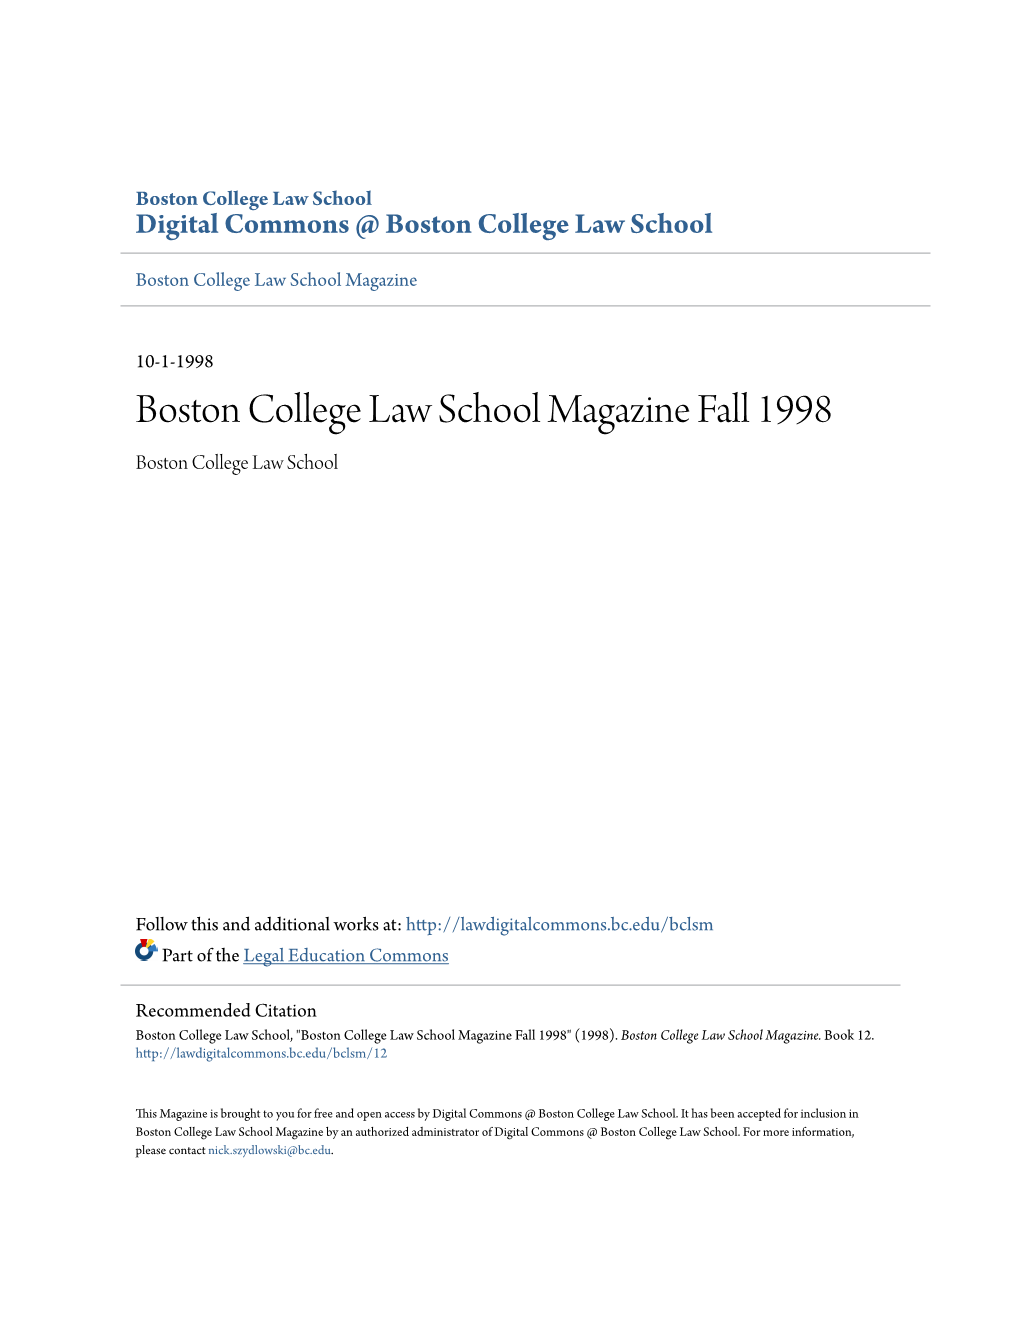 Boston College Law School Magazine Fall 1998 Boston College Law School